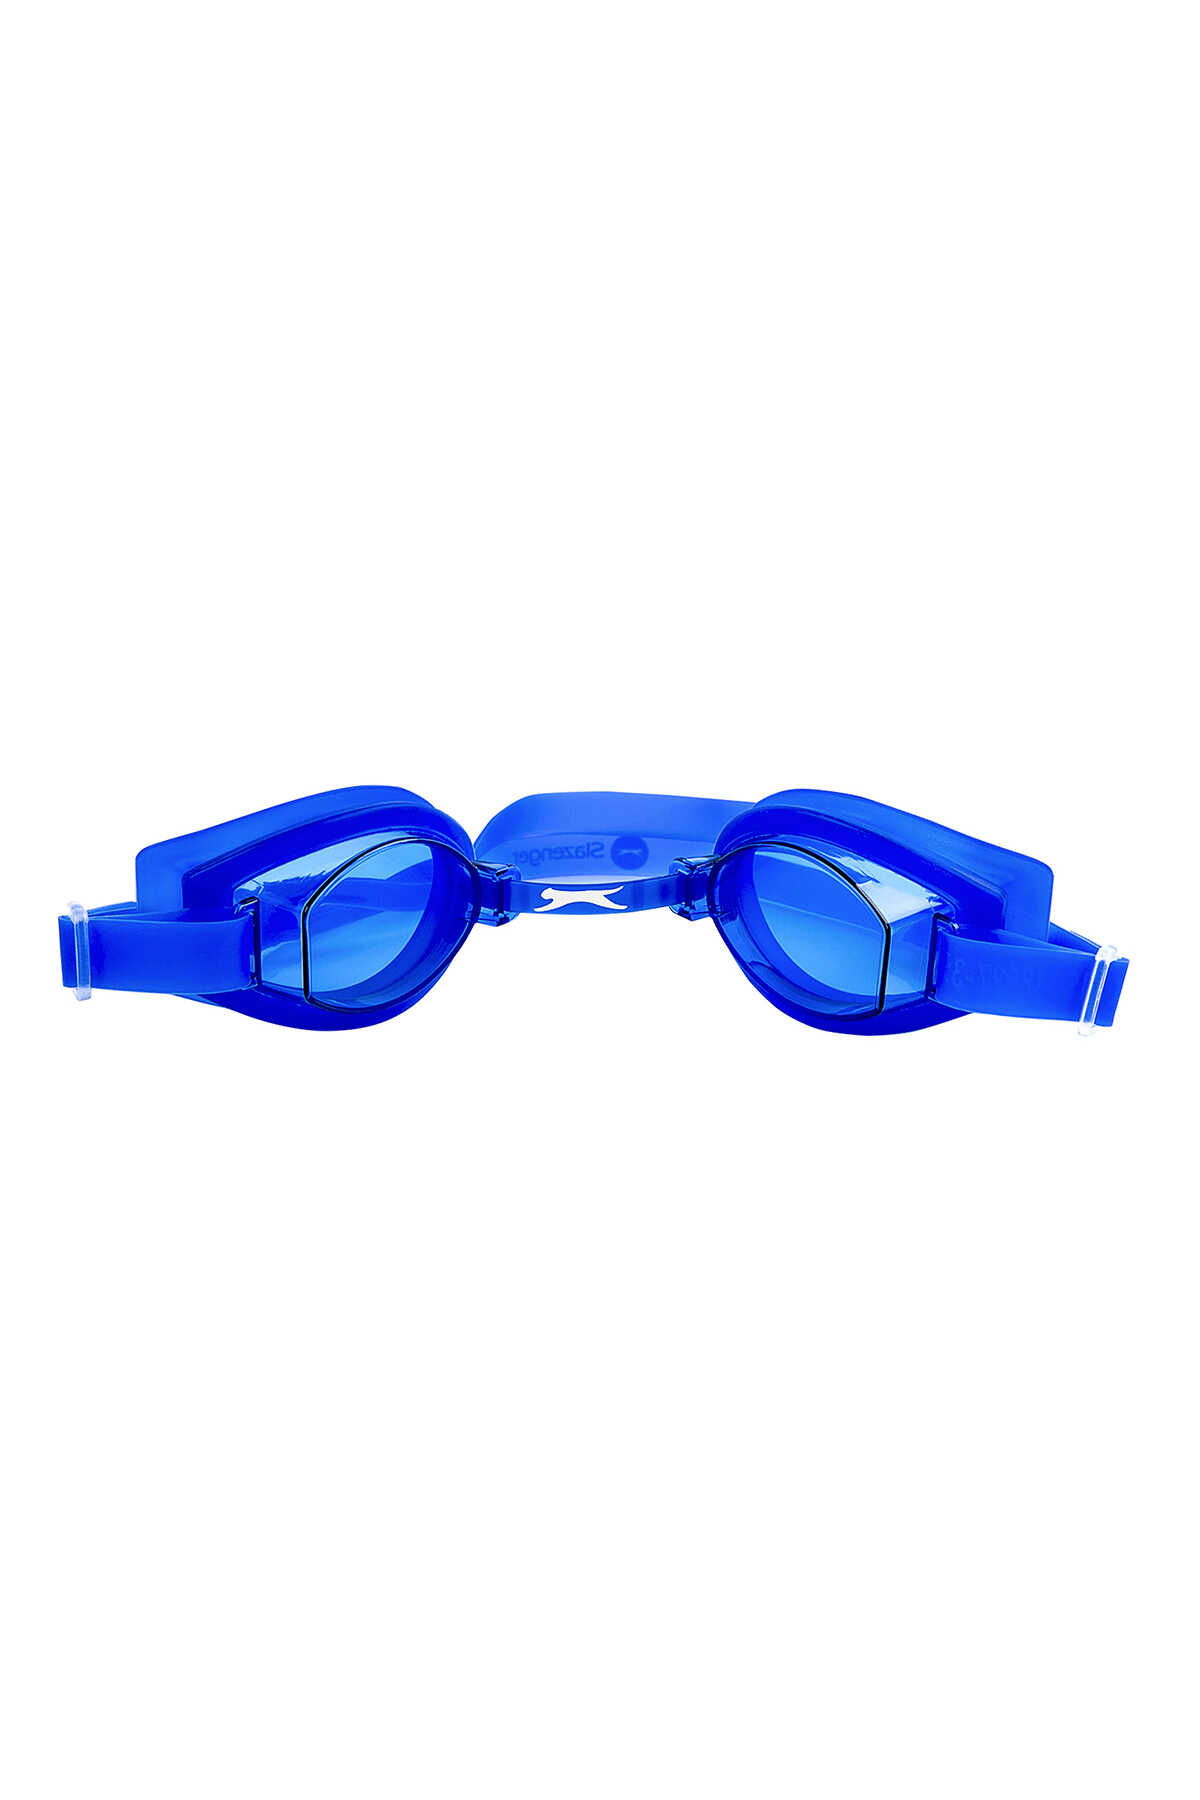 Slazenger - Slazenger Blade 2321 Unisex Yüzücü Gözlüğü Mavi